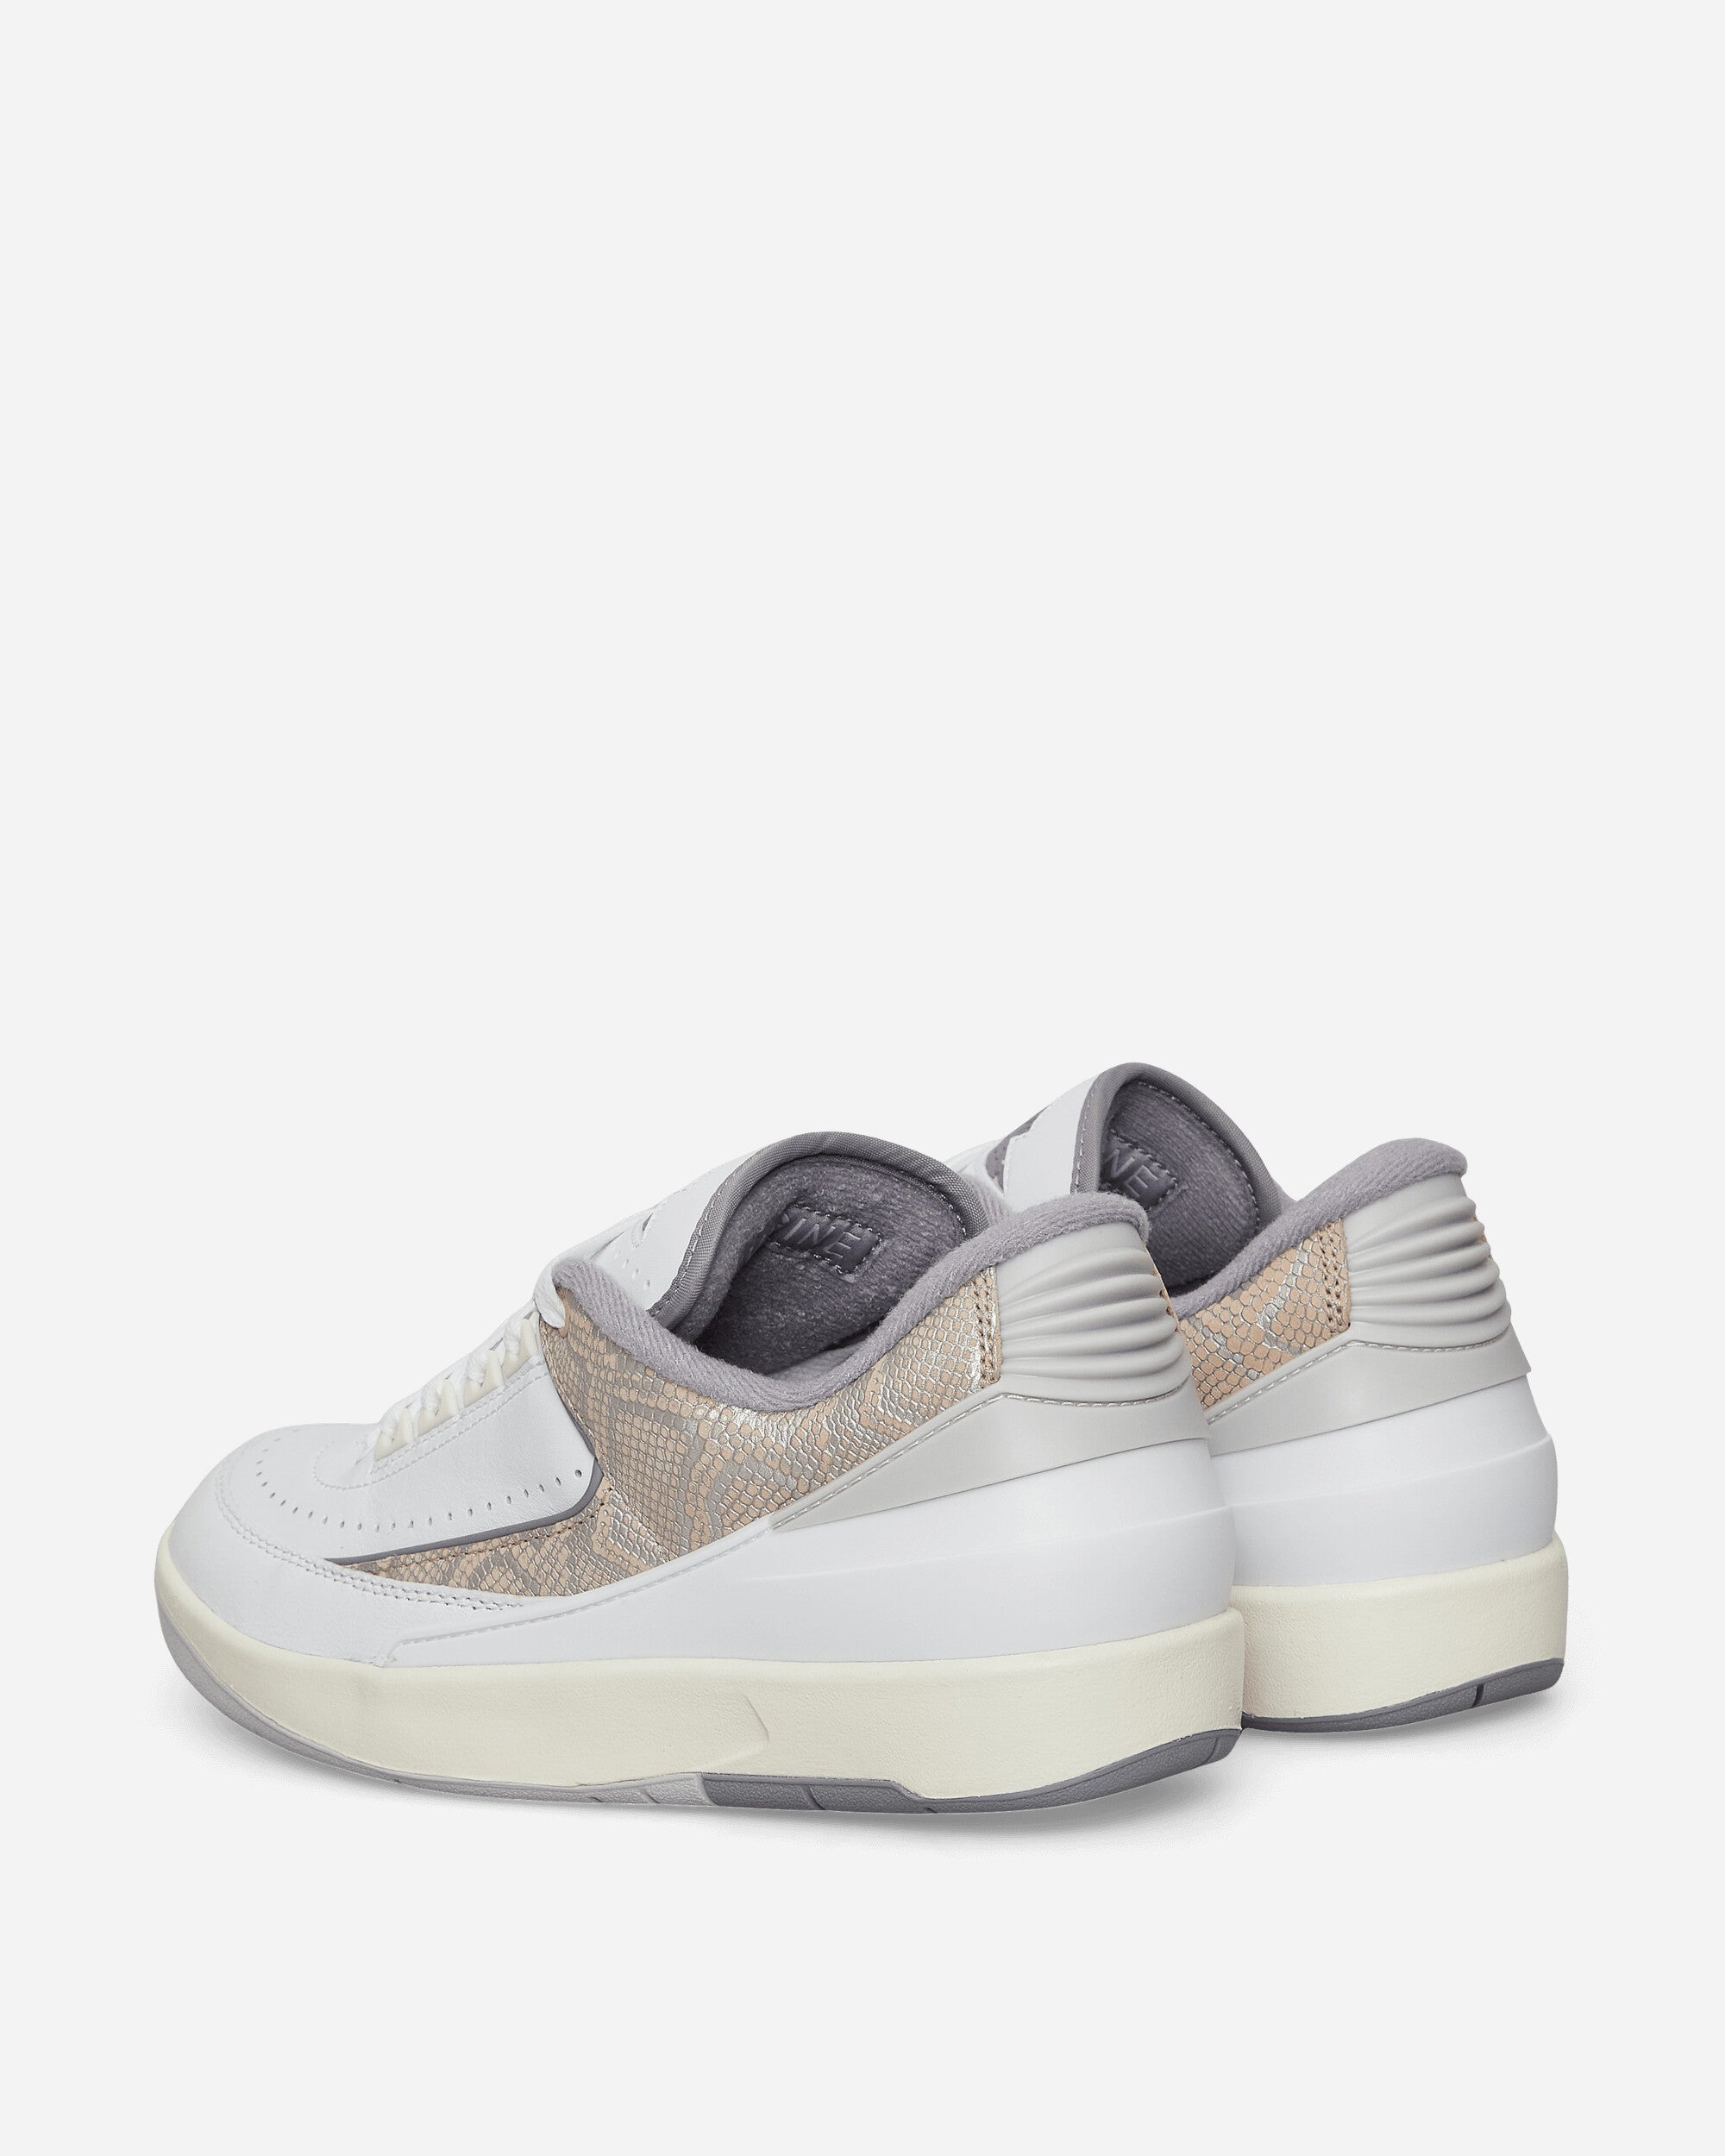 Nike Jordan Air Jordan 2 Retro Low White/Cement Grey Sneakers Low DV9956-100